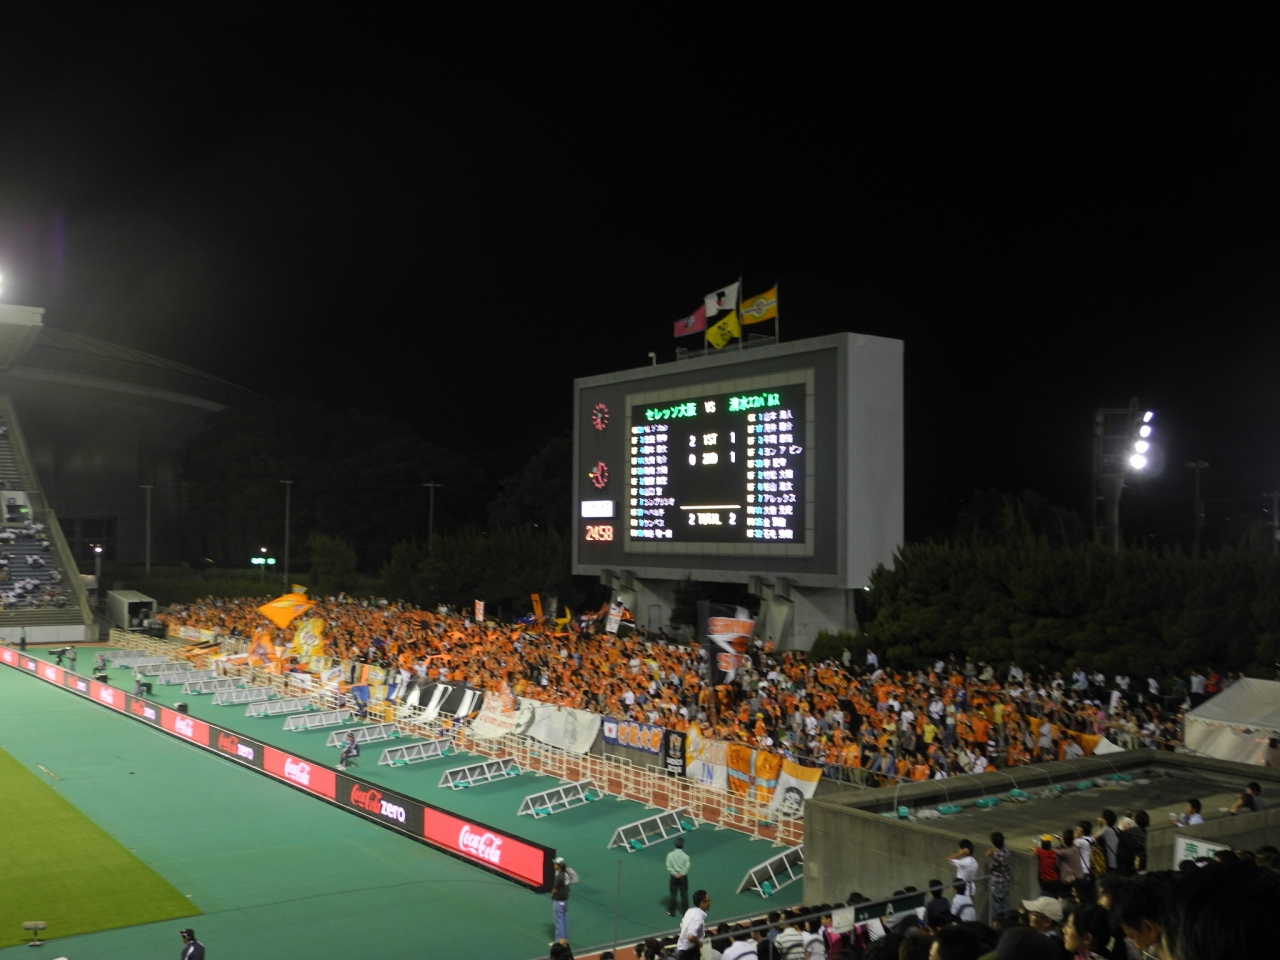 12年09月 キンチョウスタジアム 長居球技場 で試合を見てきました 住吉 平野 大阪 の旅行記 ブログ By Kazukotaさん フォートラベル